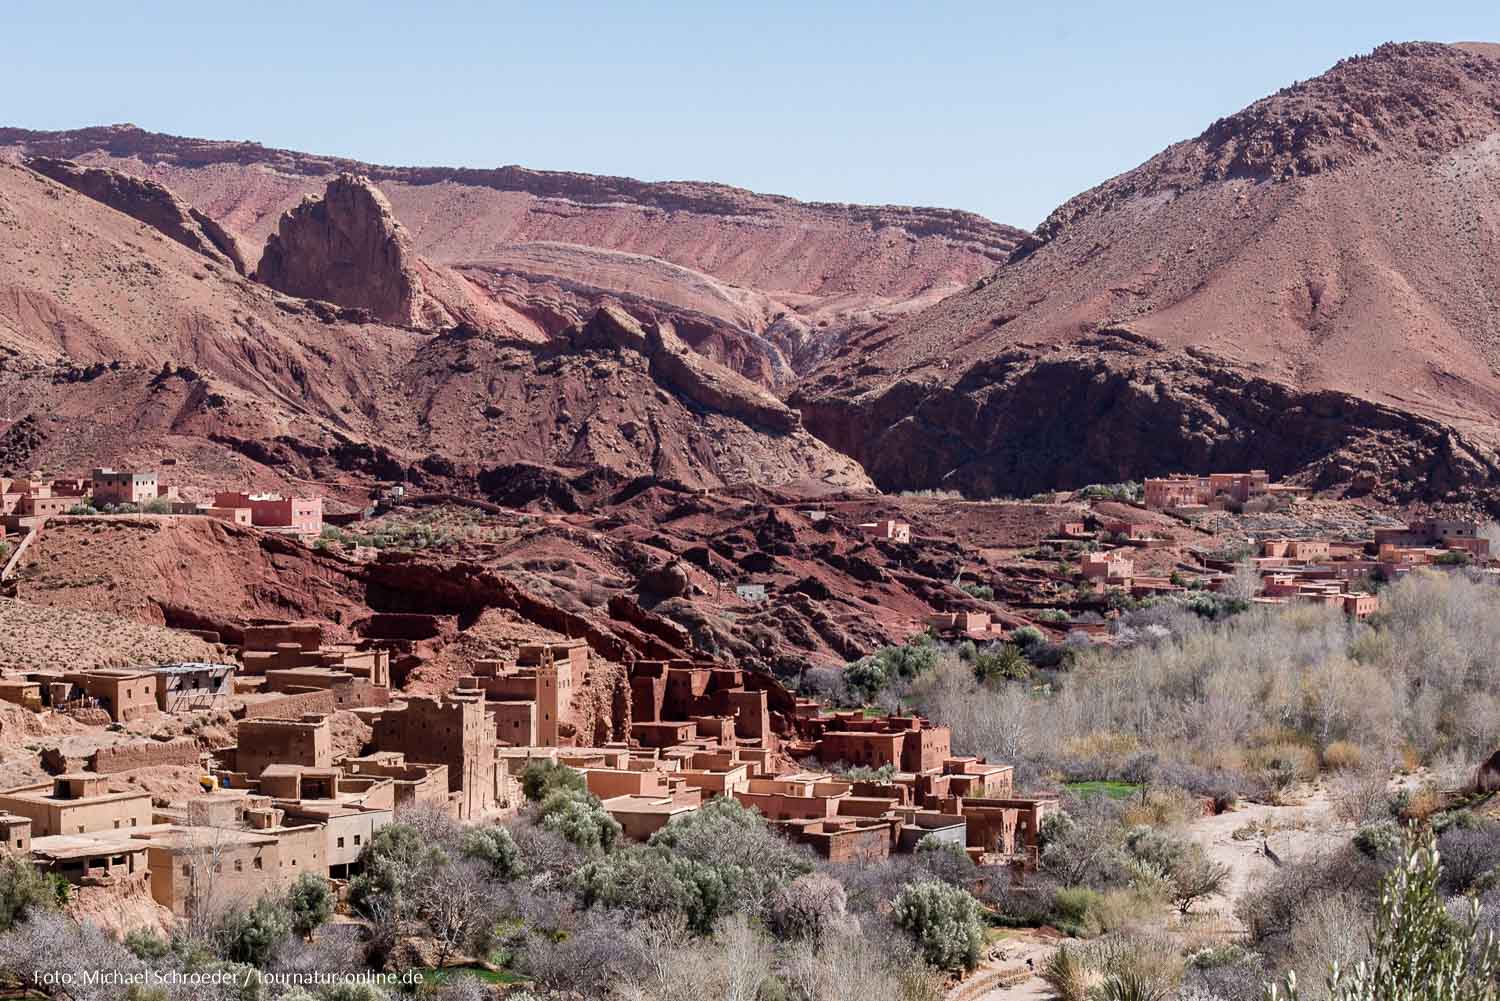 Marokko 4: Offroad durch das Hochgebirge des Hohen Atlas